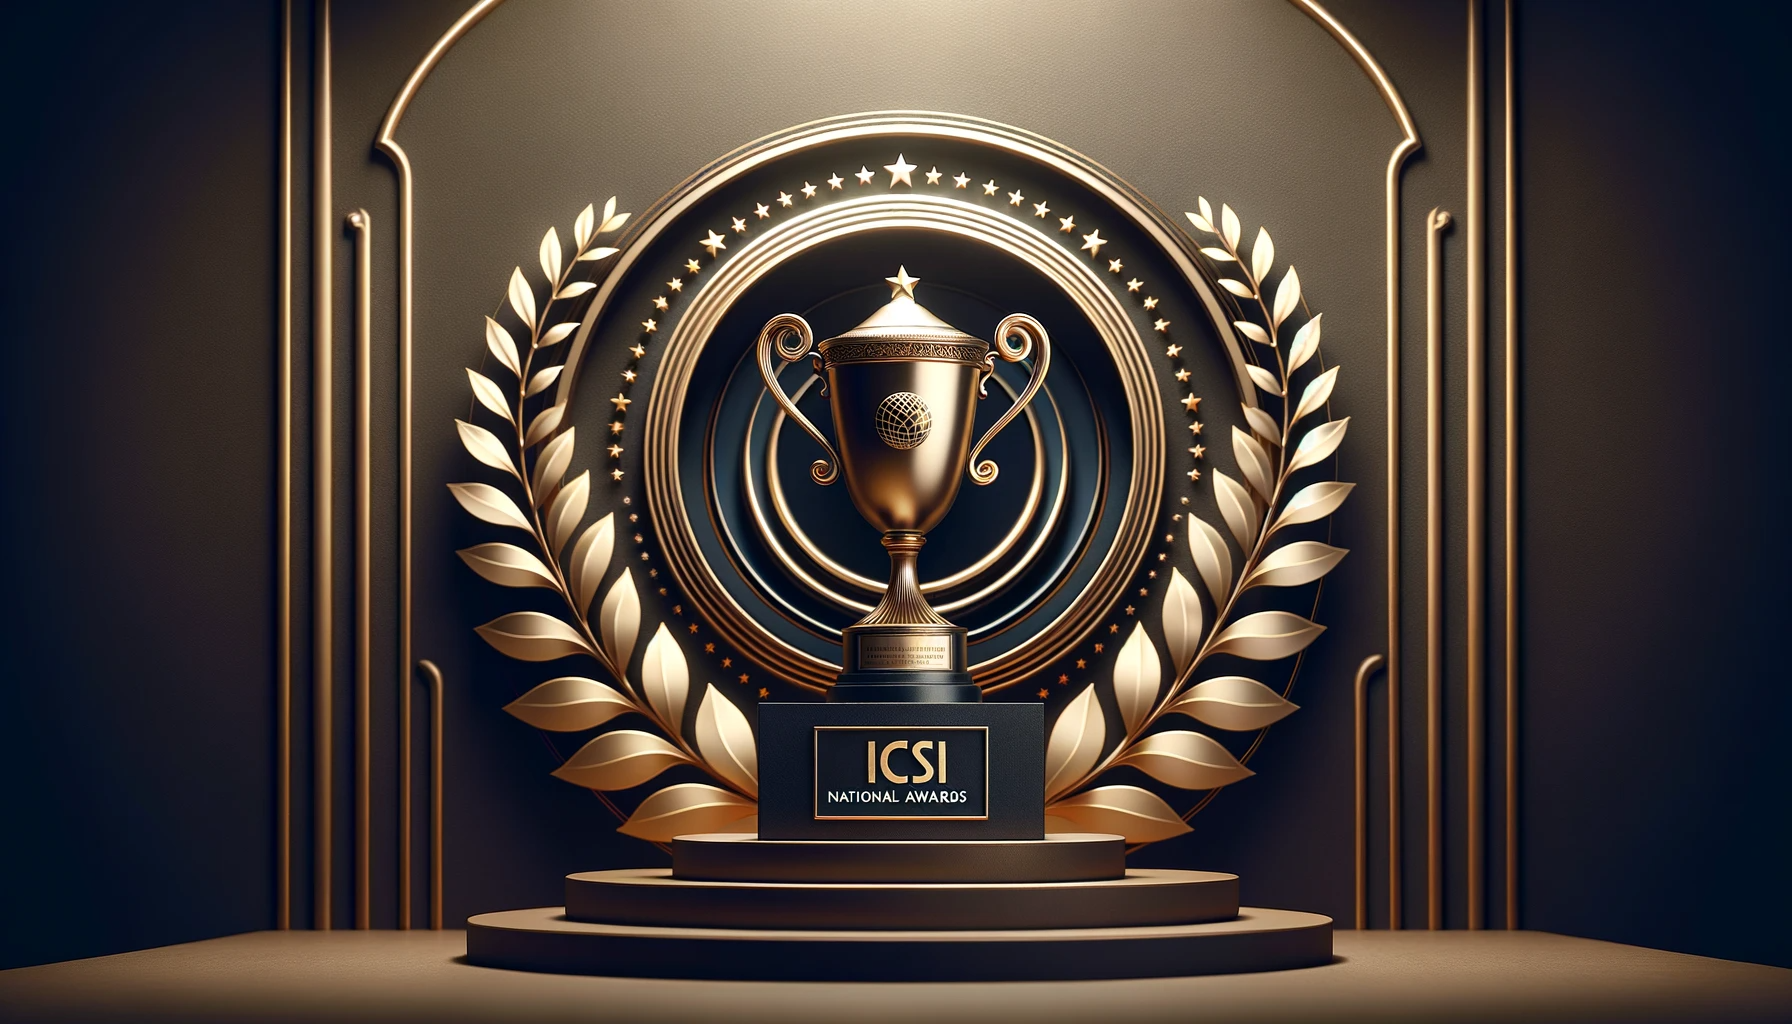 ICSI National Awards